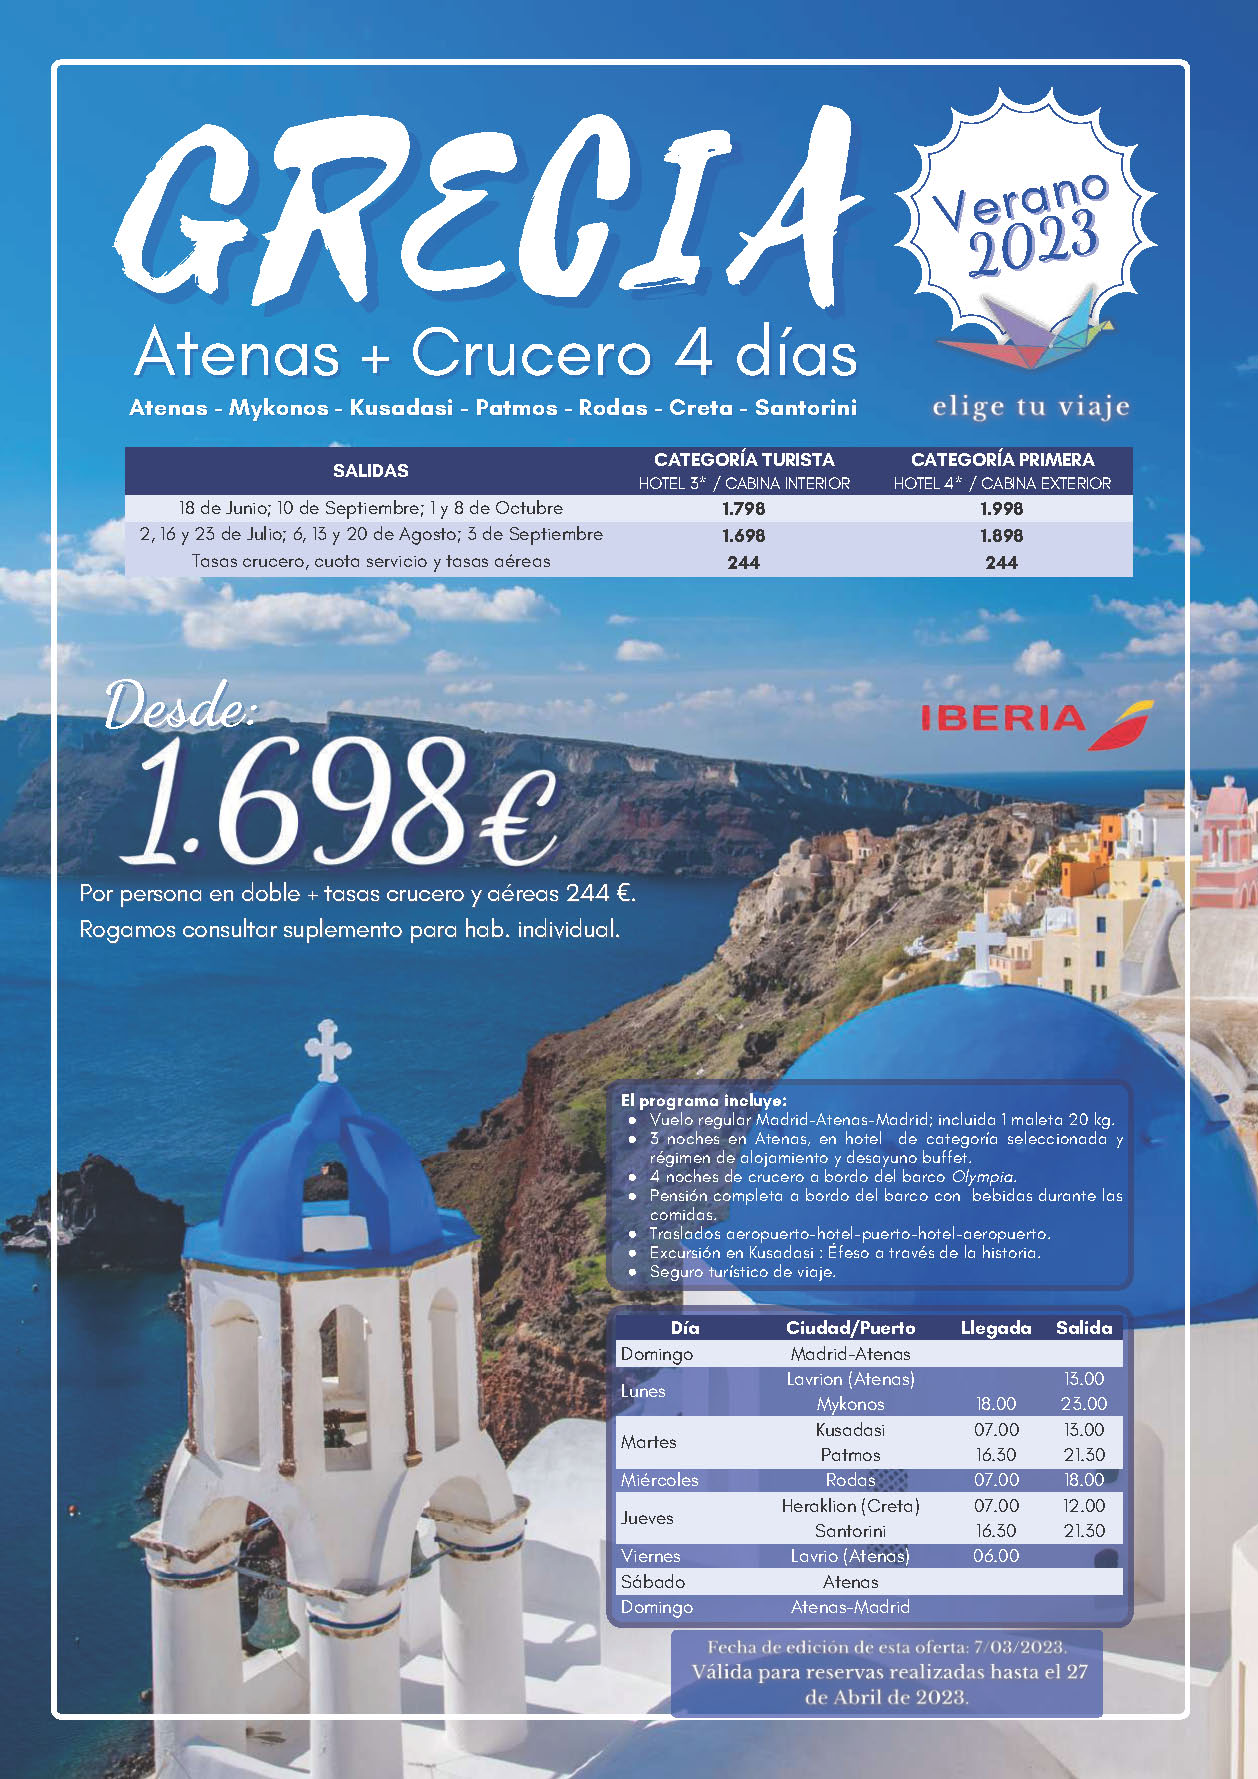 Oferta Elige tu Viaje Verano 2023 circuito Grecia Atenas y Crucero Mar Egeo 8 dias salidas desde Madrid vuelos Iberia cupos